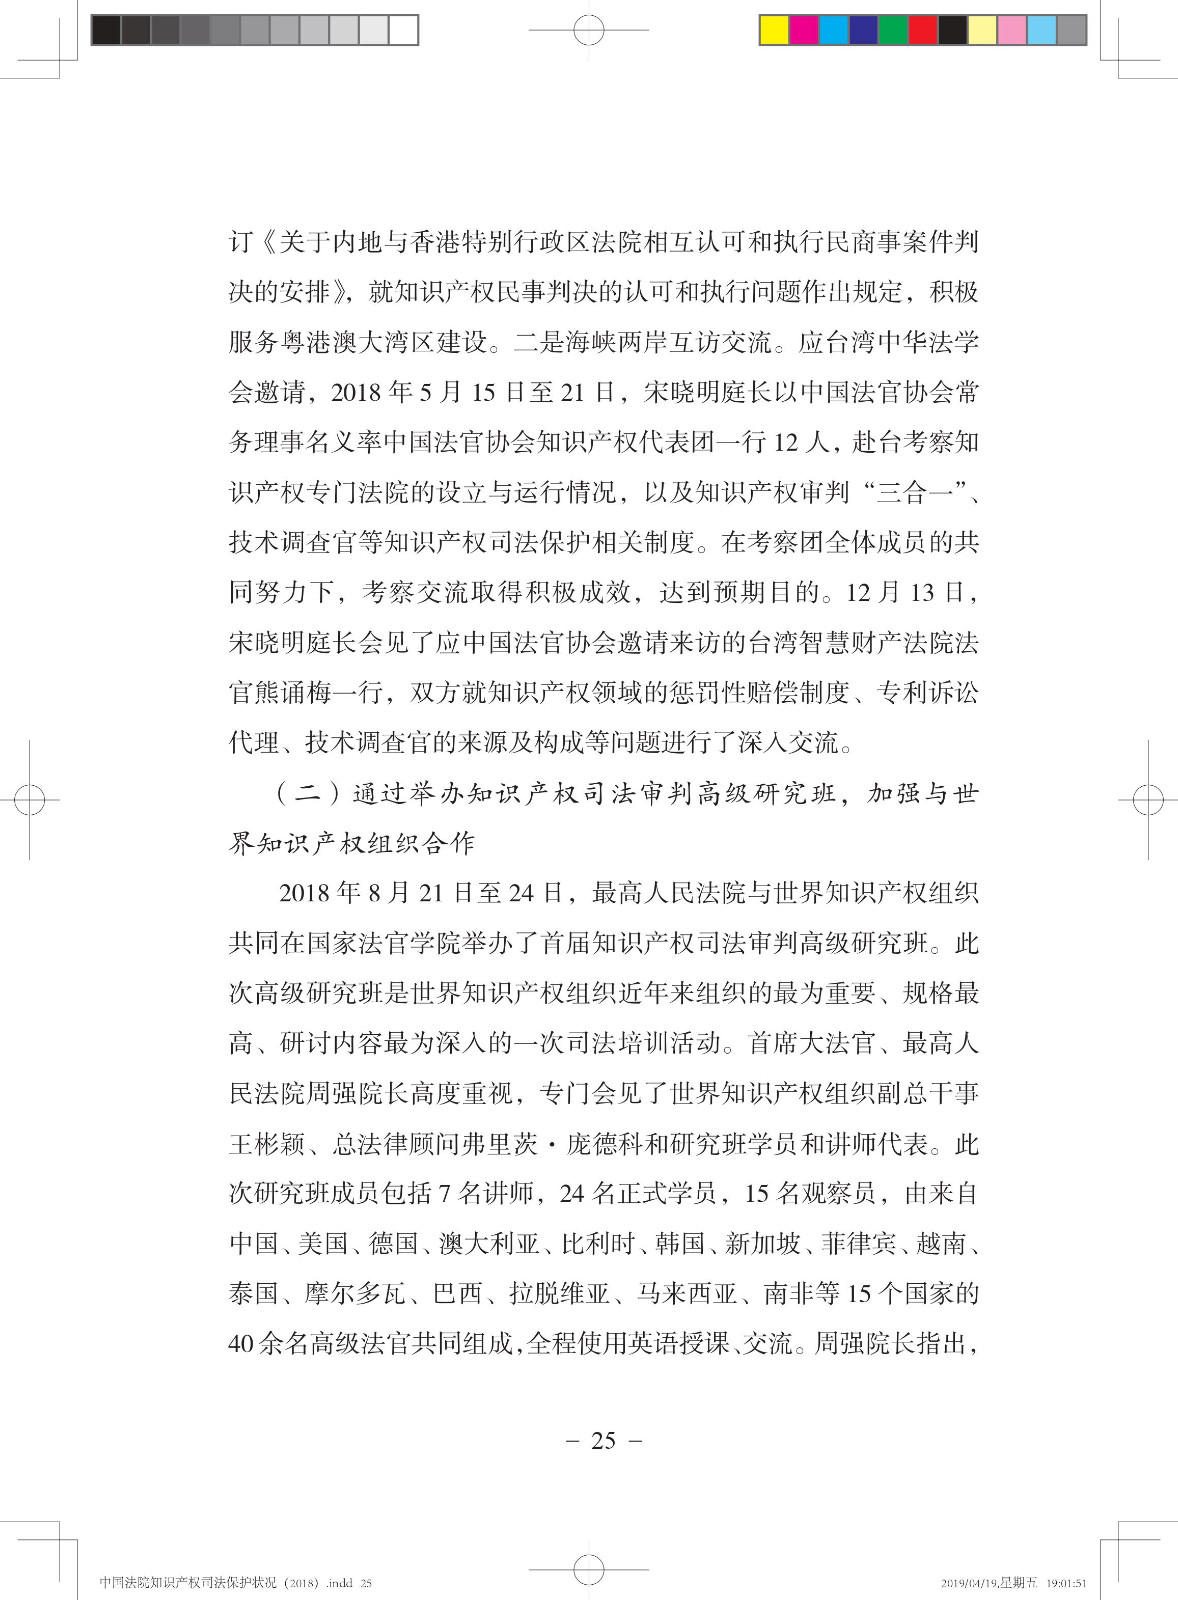 《中国法院知识产权司法保护状况（2018年）》白皮书全文